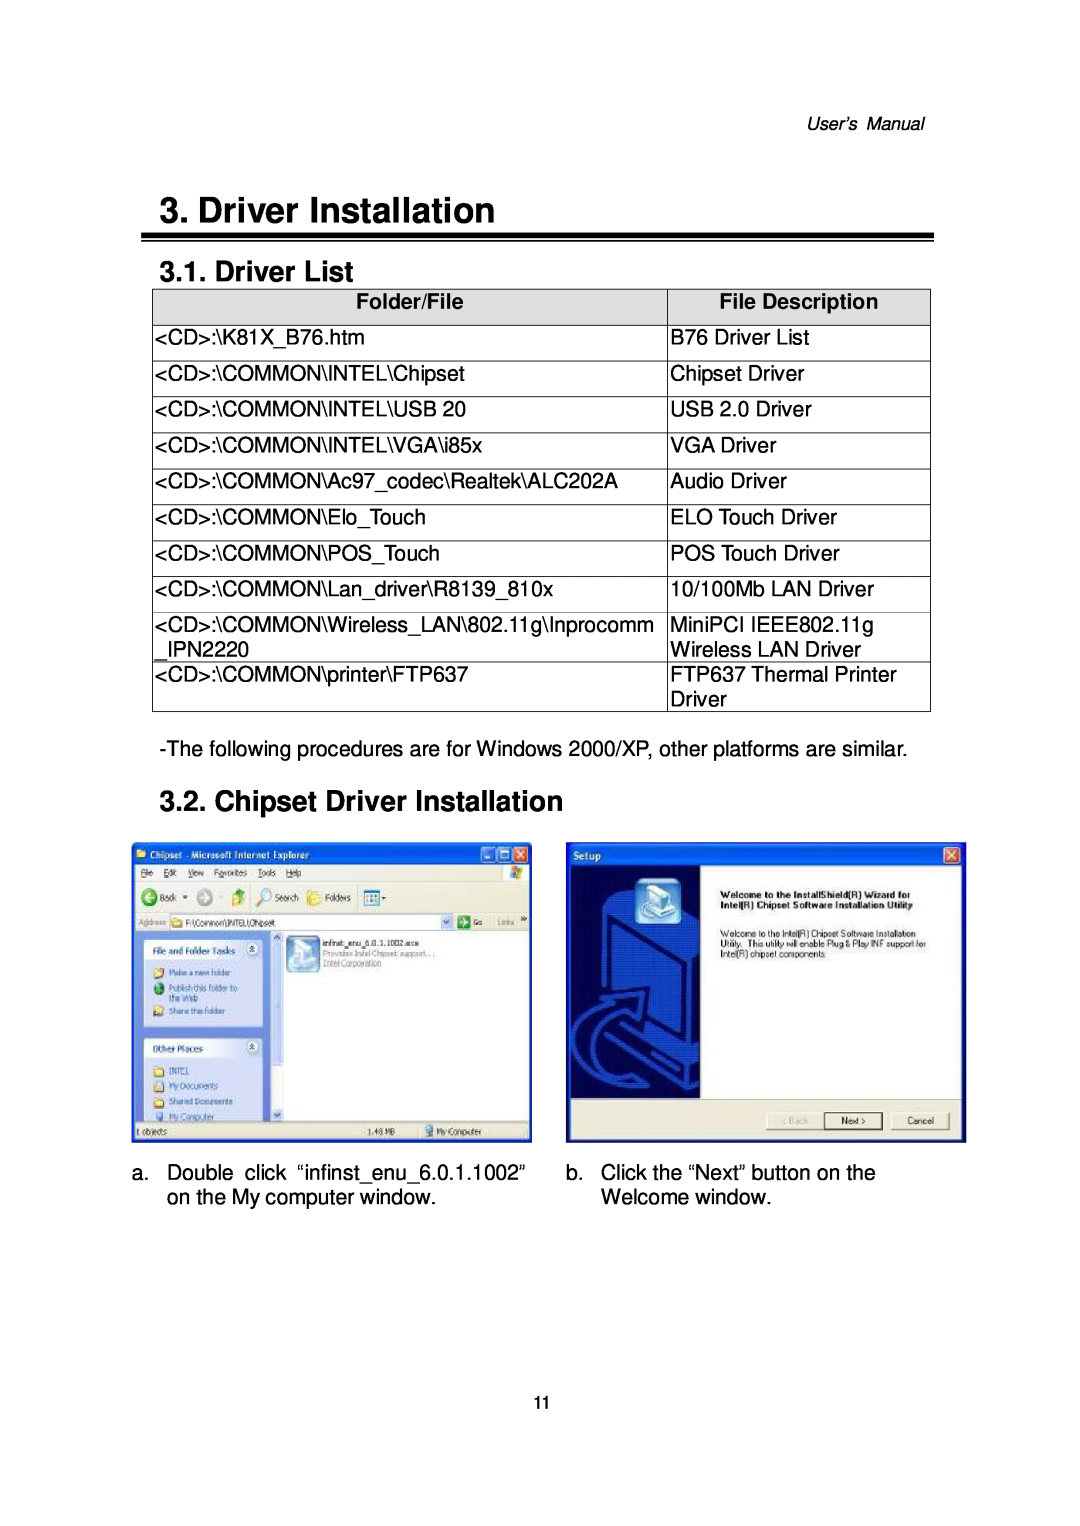 Intel Kiosk Hardware System, 48201201 Driver List, Chipset Driver Installation, Folder/File, File Description 